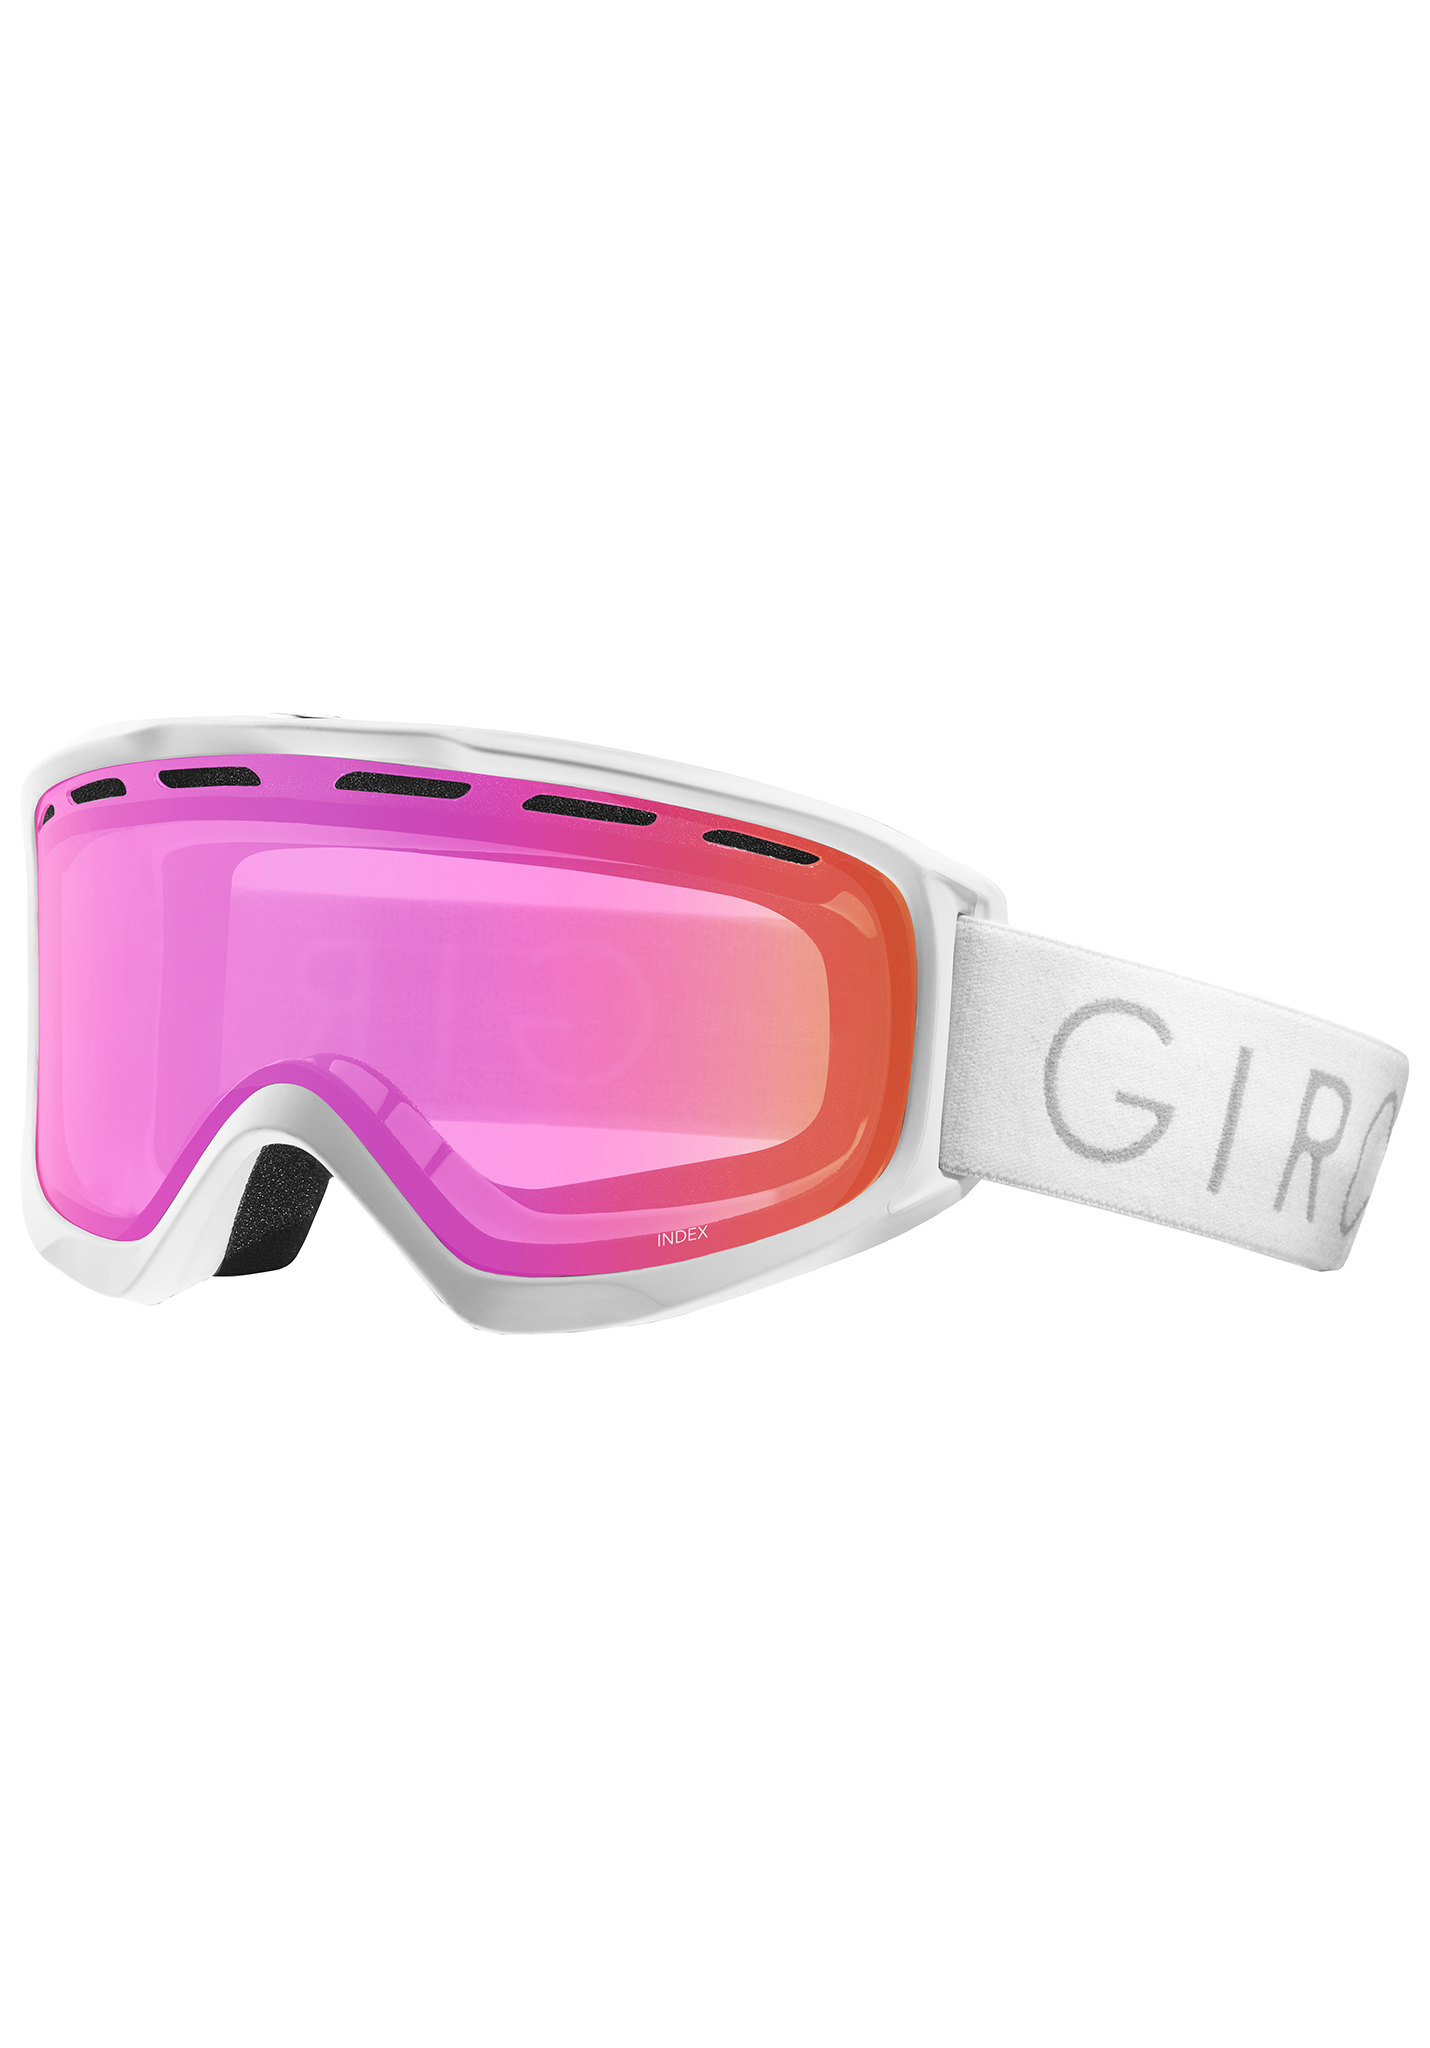 Giro Index Snowboardbrillen weißer kern hell/bernsteinfarben One Size